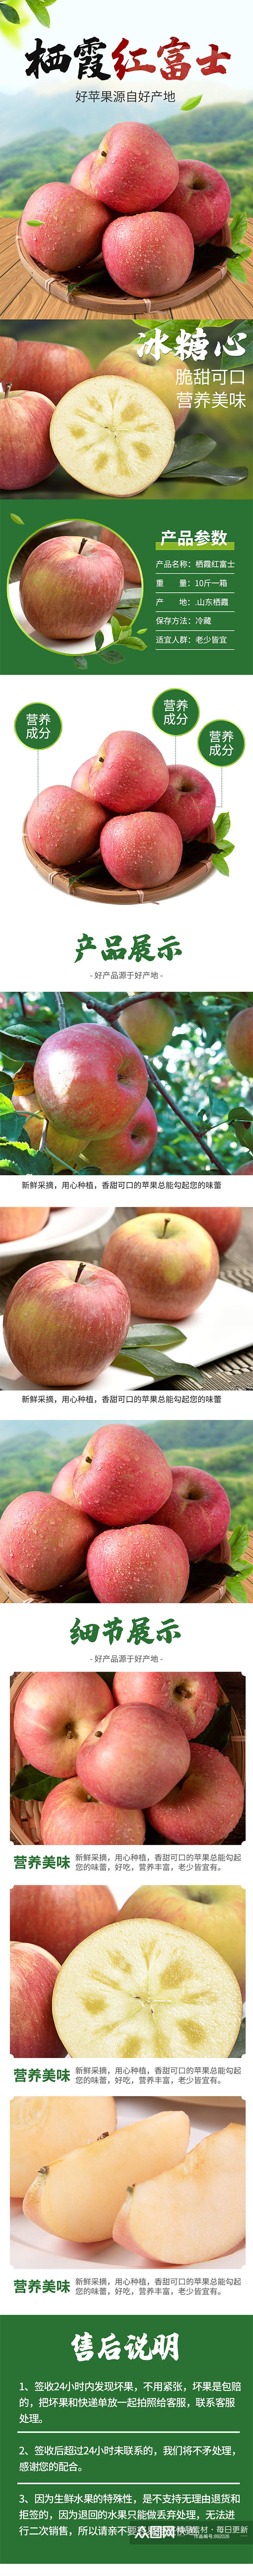 栖霞红富士苹果水果农产品特产食品详情页素材